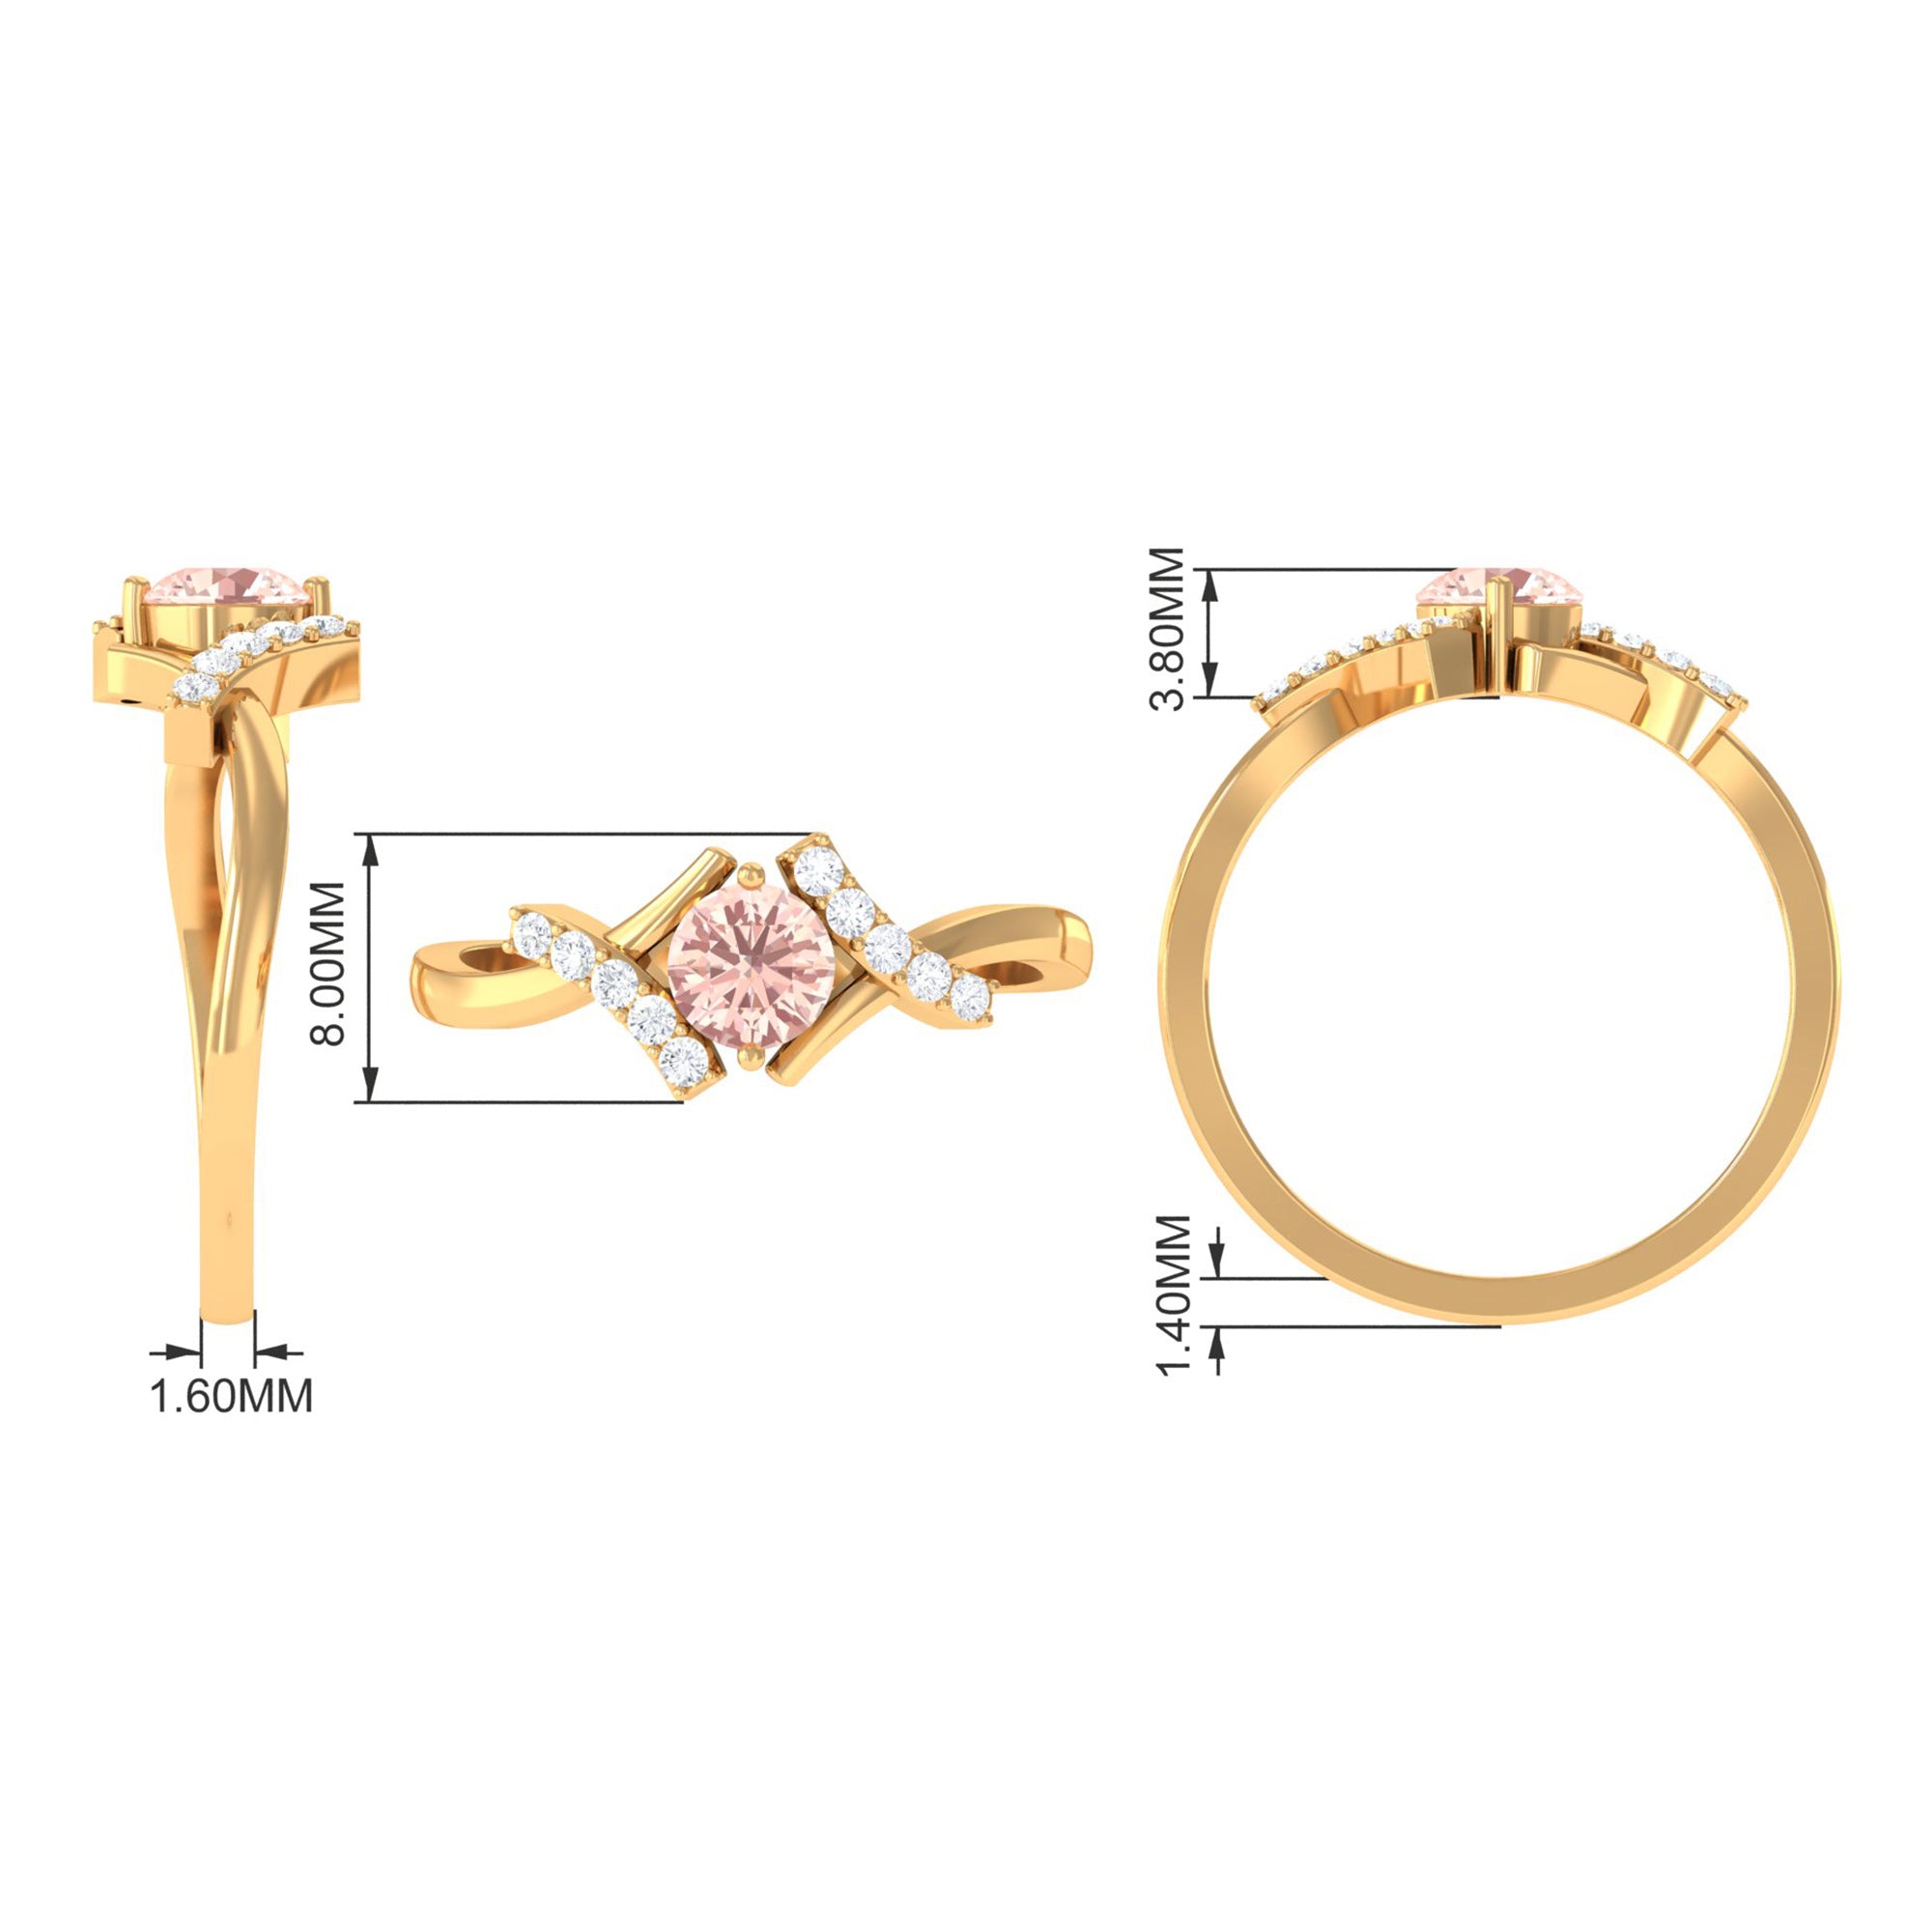 Morganite and Diamond Designer Engagement Ring Morganite - ( AAA ) - Quality - Rosec Jewels